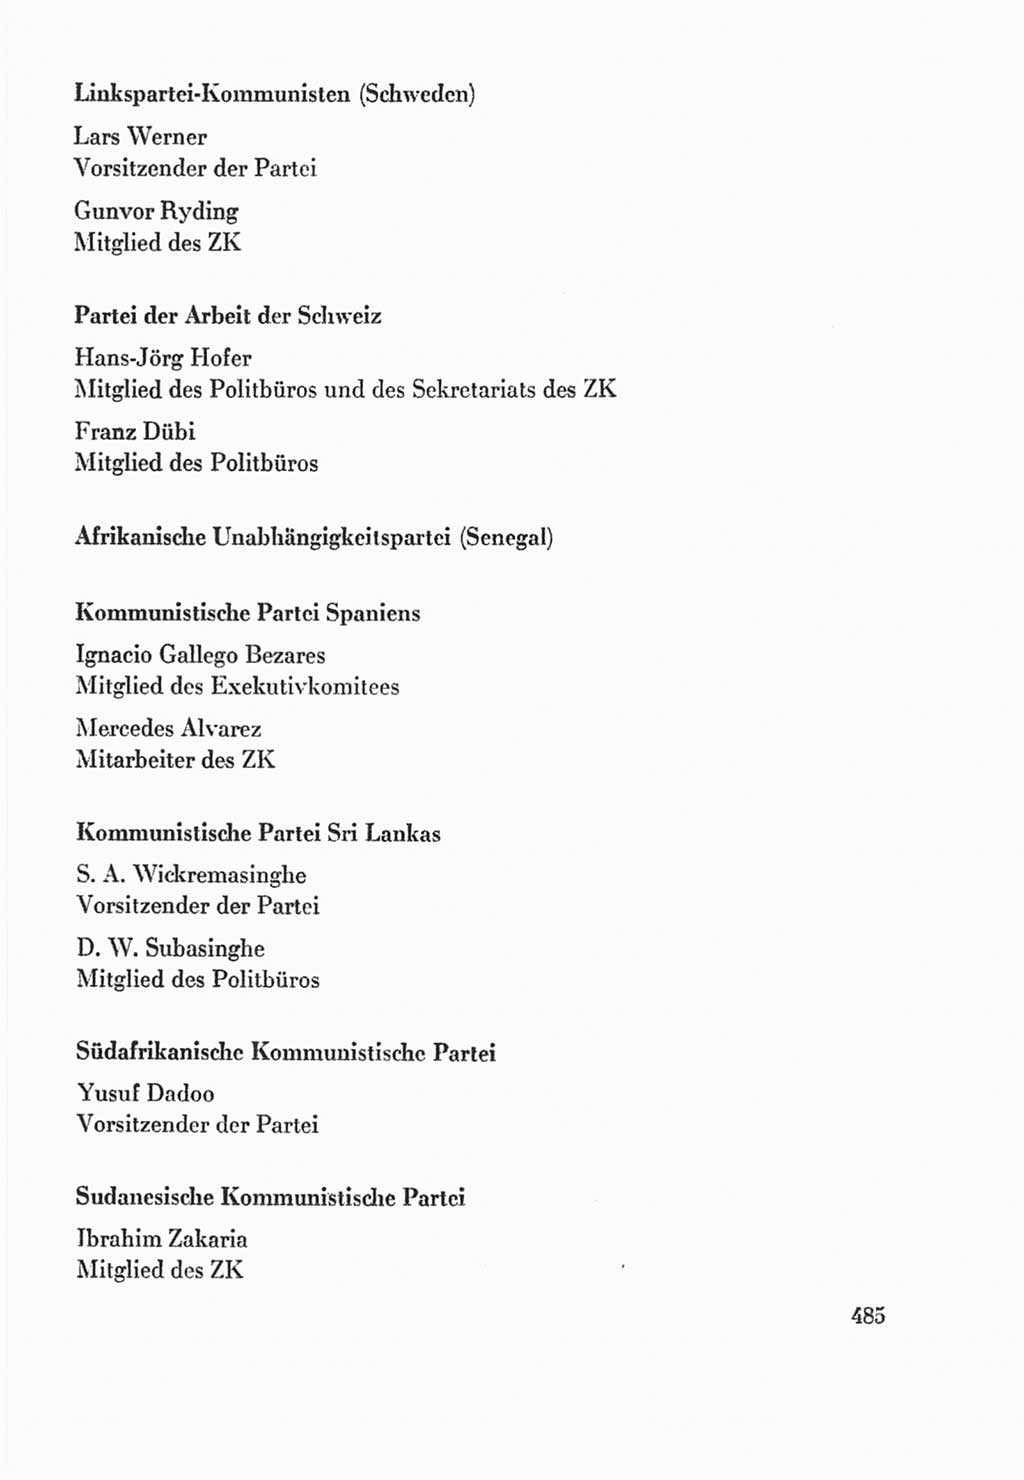 Protokoll der Verhandlungen des Ⅸ. Parteitages der Sozialistischen Einheitspartei Deutschlands (SED) [Deutsche Demokratische Republik (DDR)] 1976, Band 2, Seite 485 (Prot. Verh. Ⅸ. PT SED DDR 1976, Bd. 2, S. 485)